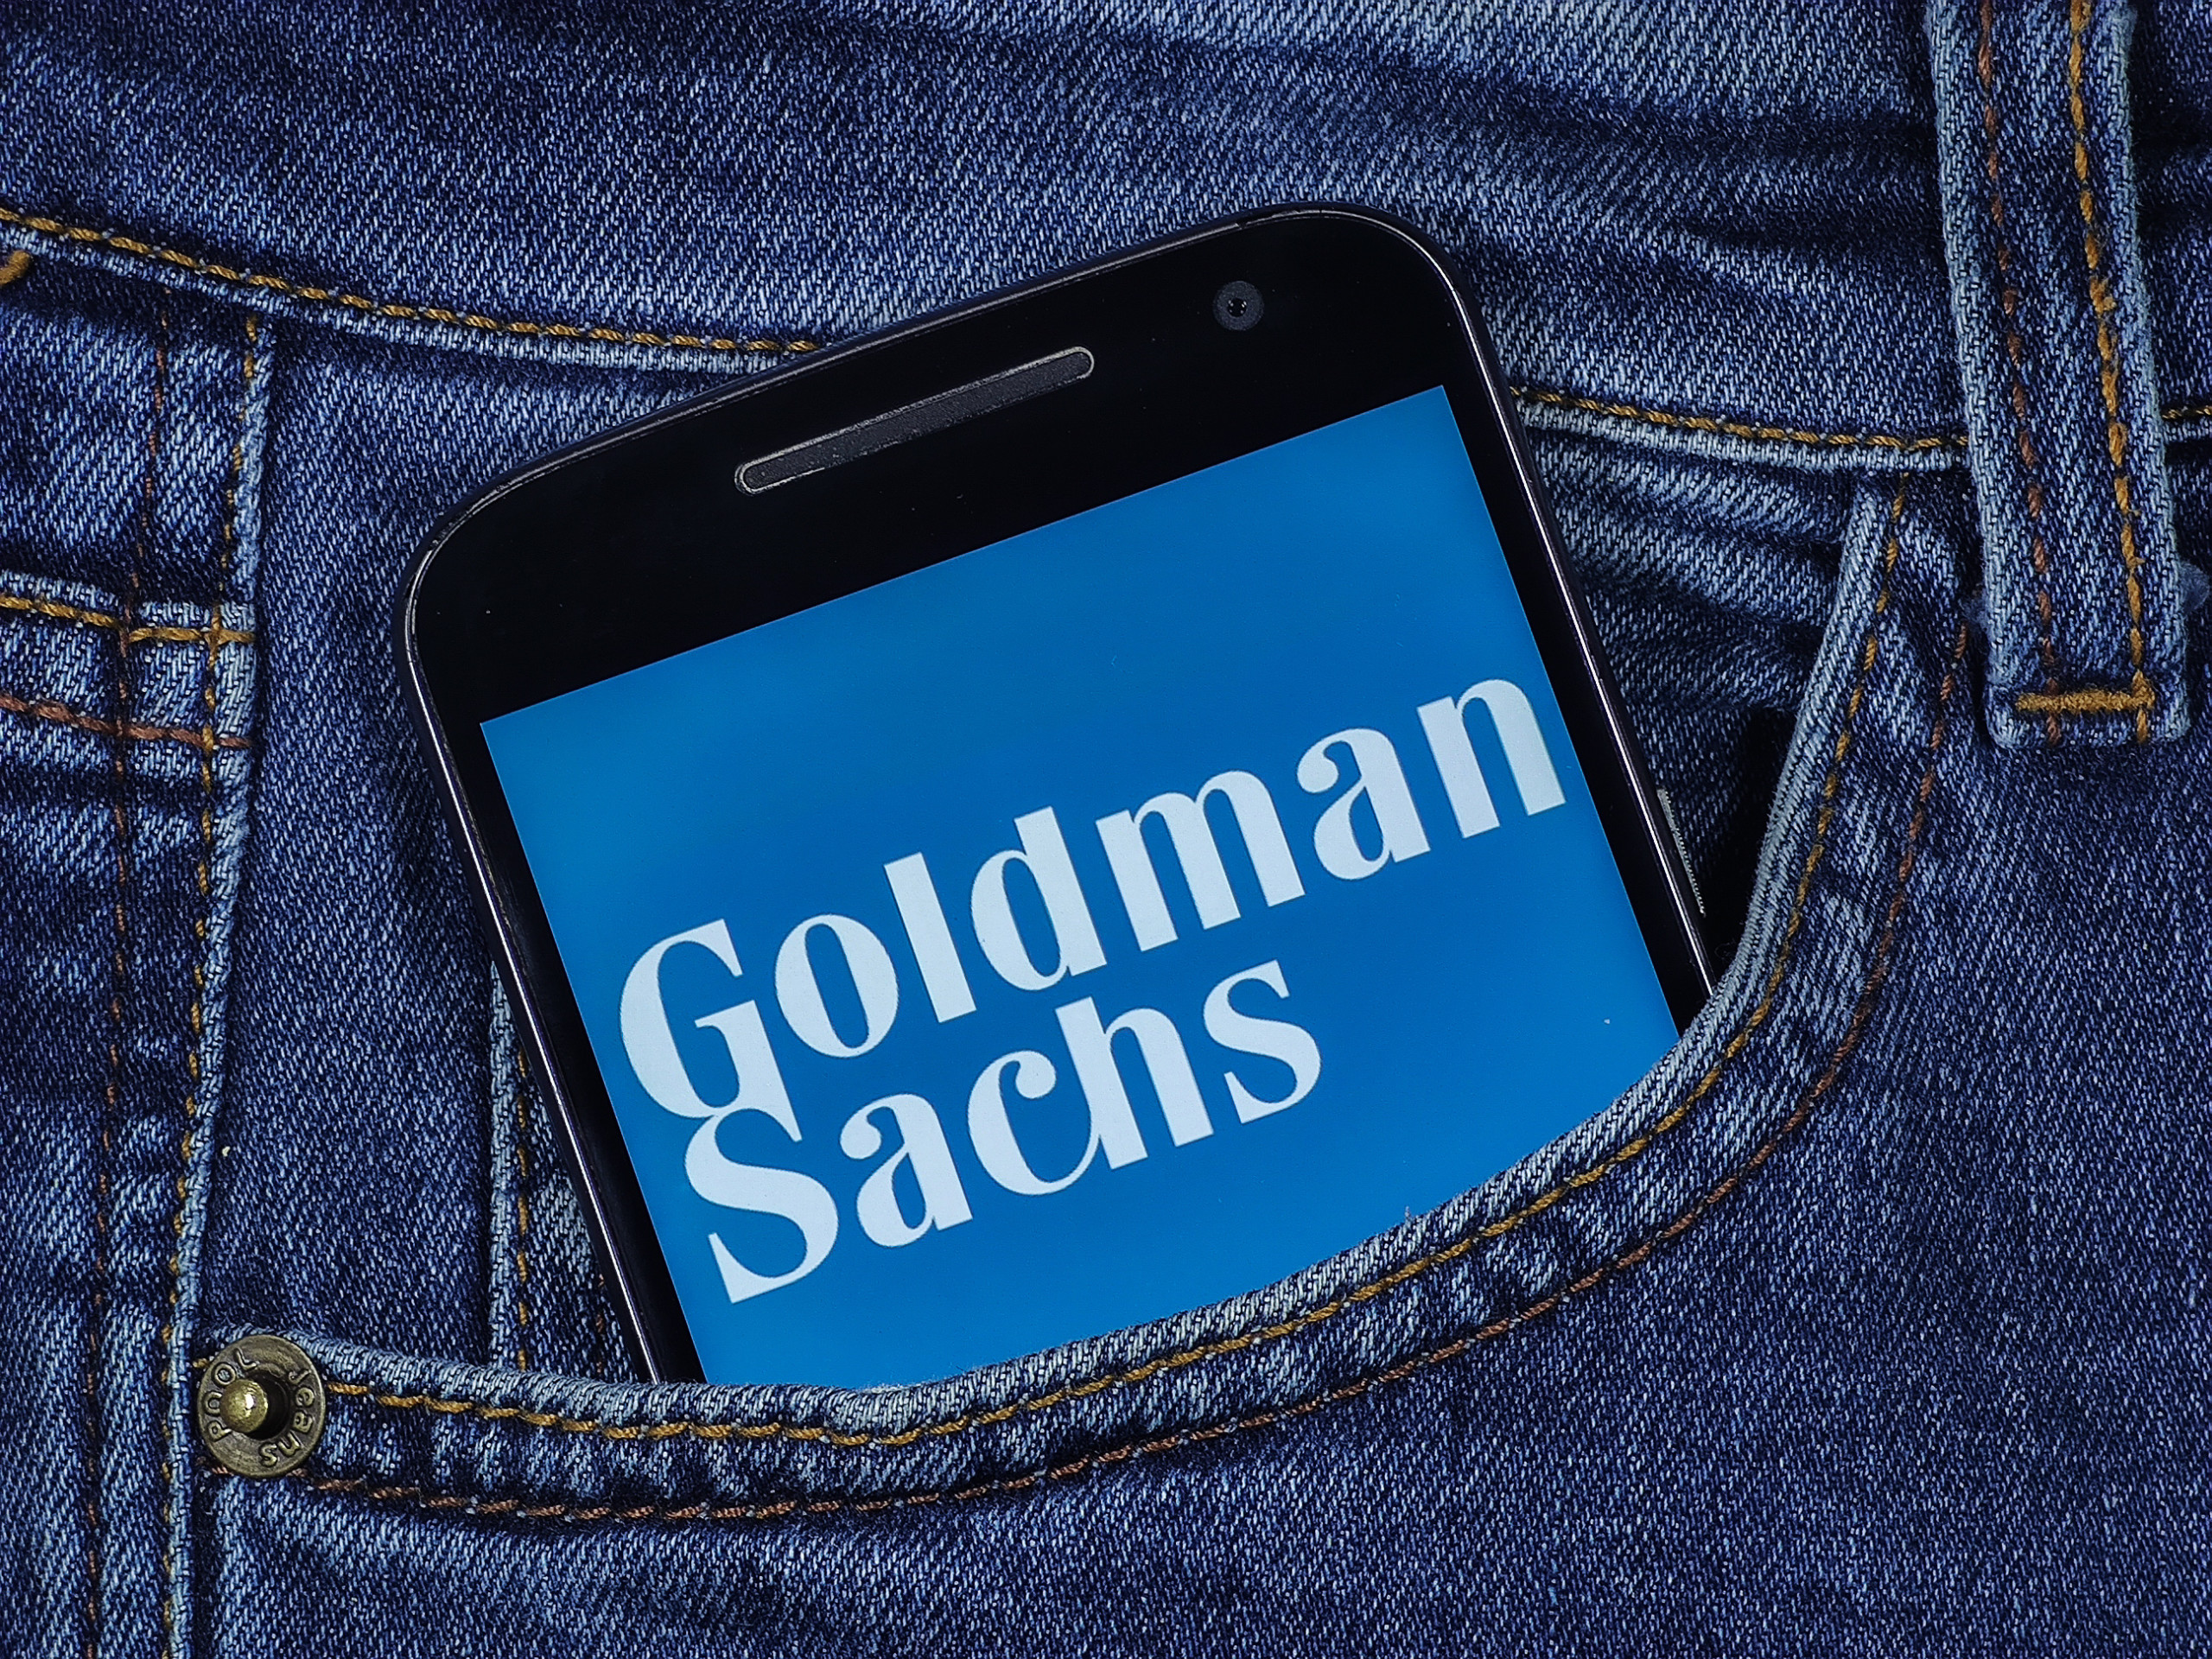 Apple Card: Goldman Sachs will Zusammenarbeit mit Apple beenden